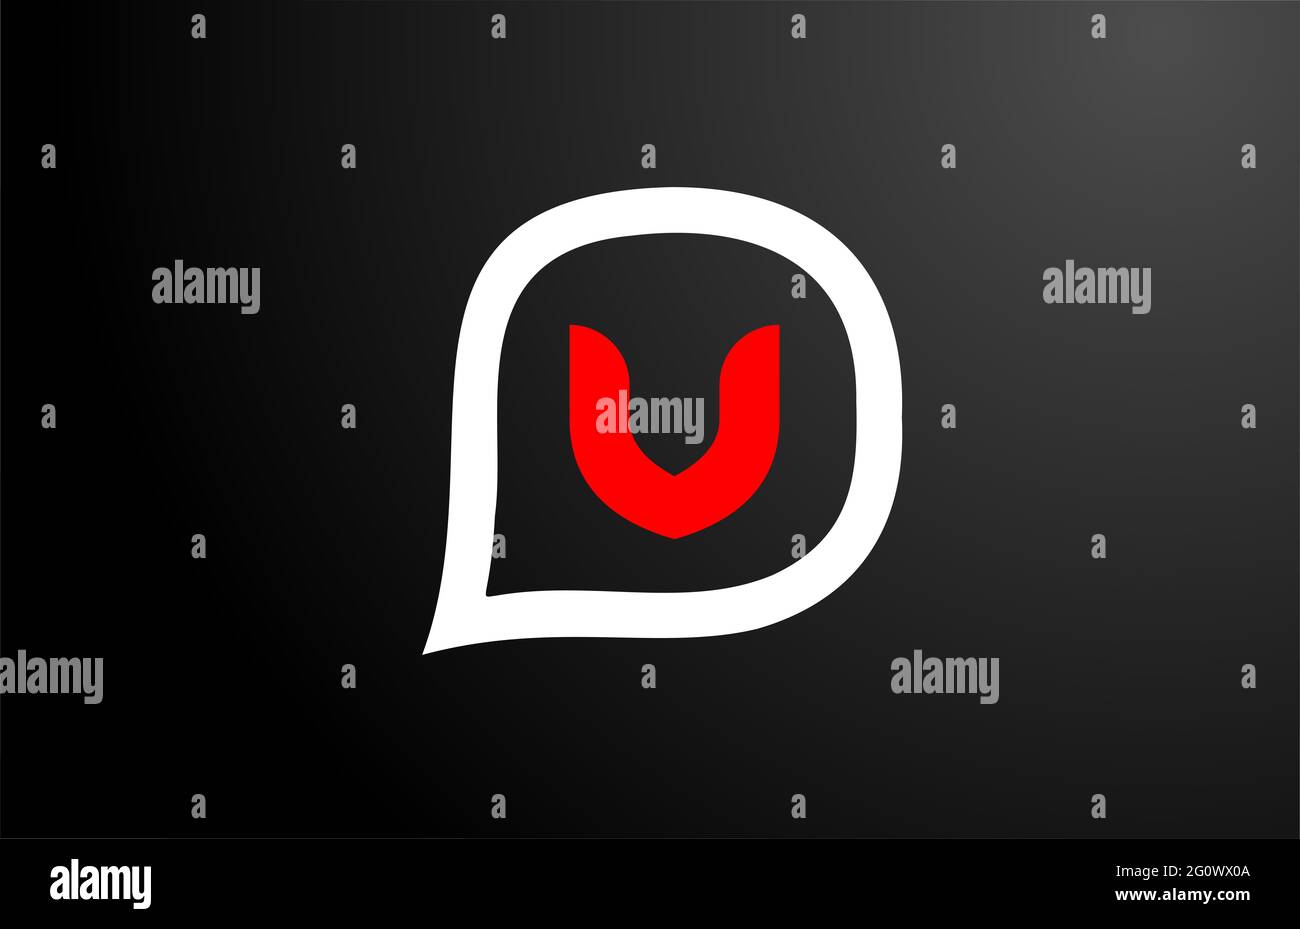 V letter design con nuvola di domande rossa. Logo alfabeto. Icona di branding per prodotti e società Foto Stock